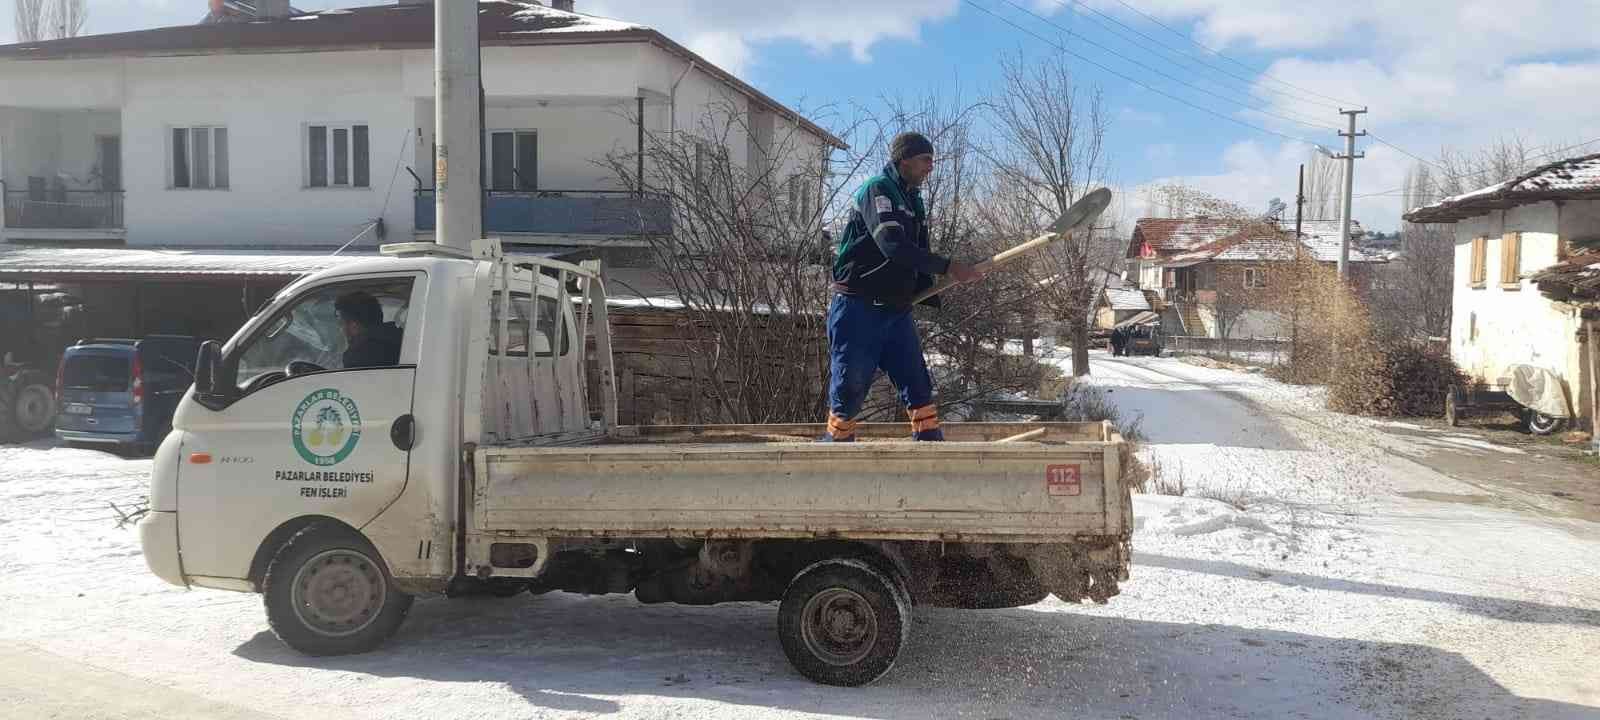 Pazarlar’da karla mücadelede 100 ton tuz kullanıldı #kutahya